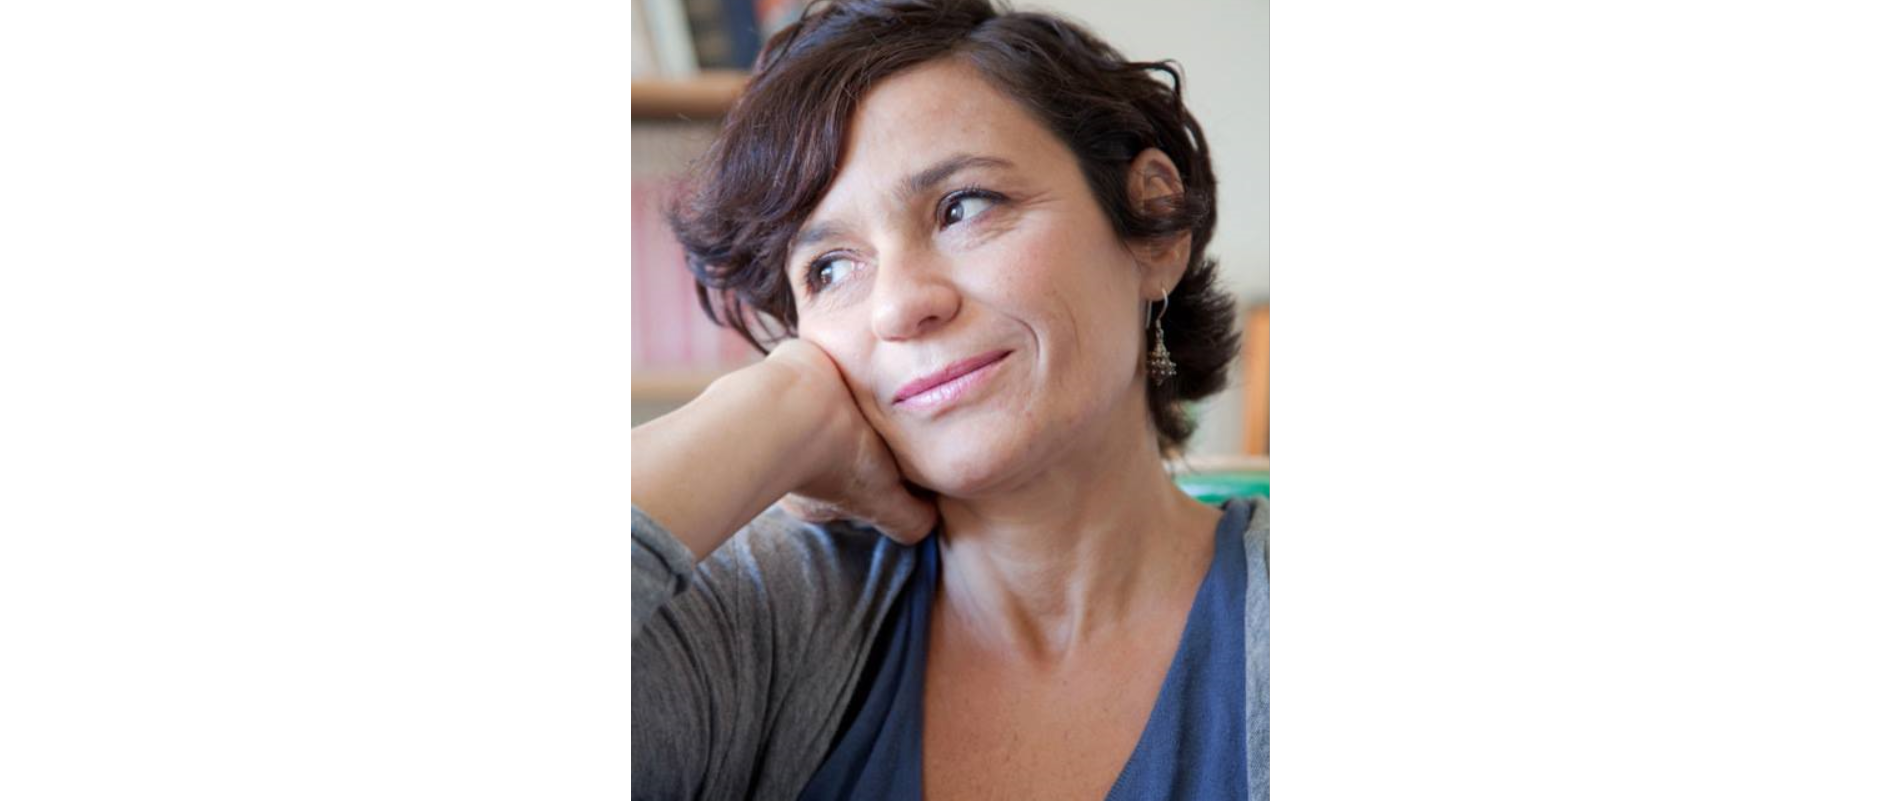 La scrittrice materana Mariolina Venezia vince la quarta edizione del premio letterario Friuli Venezia Giulia “Il racconto dei luoghi e del tempo”